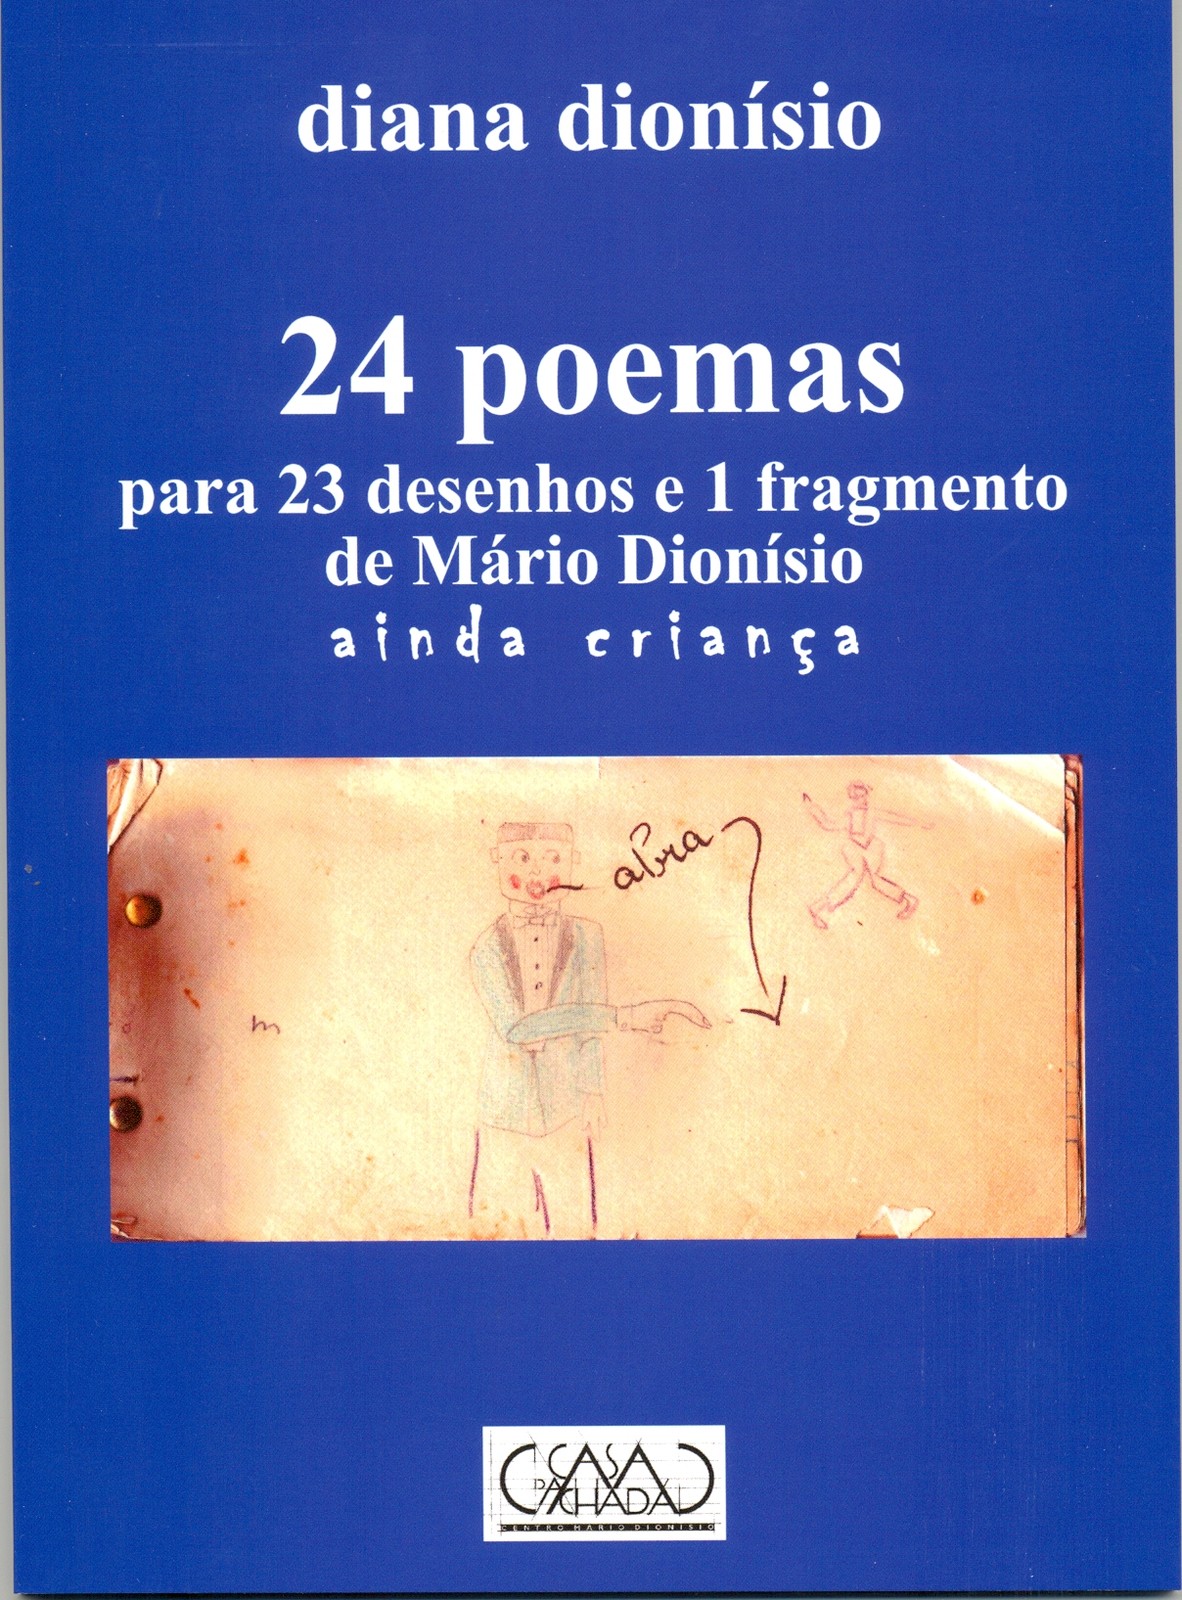 Diana Dionísio - 24 poemas para 23 desenhos e 1 fragmento de Mário Dionísio - ainda criança